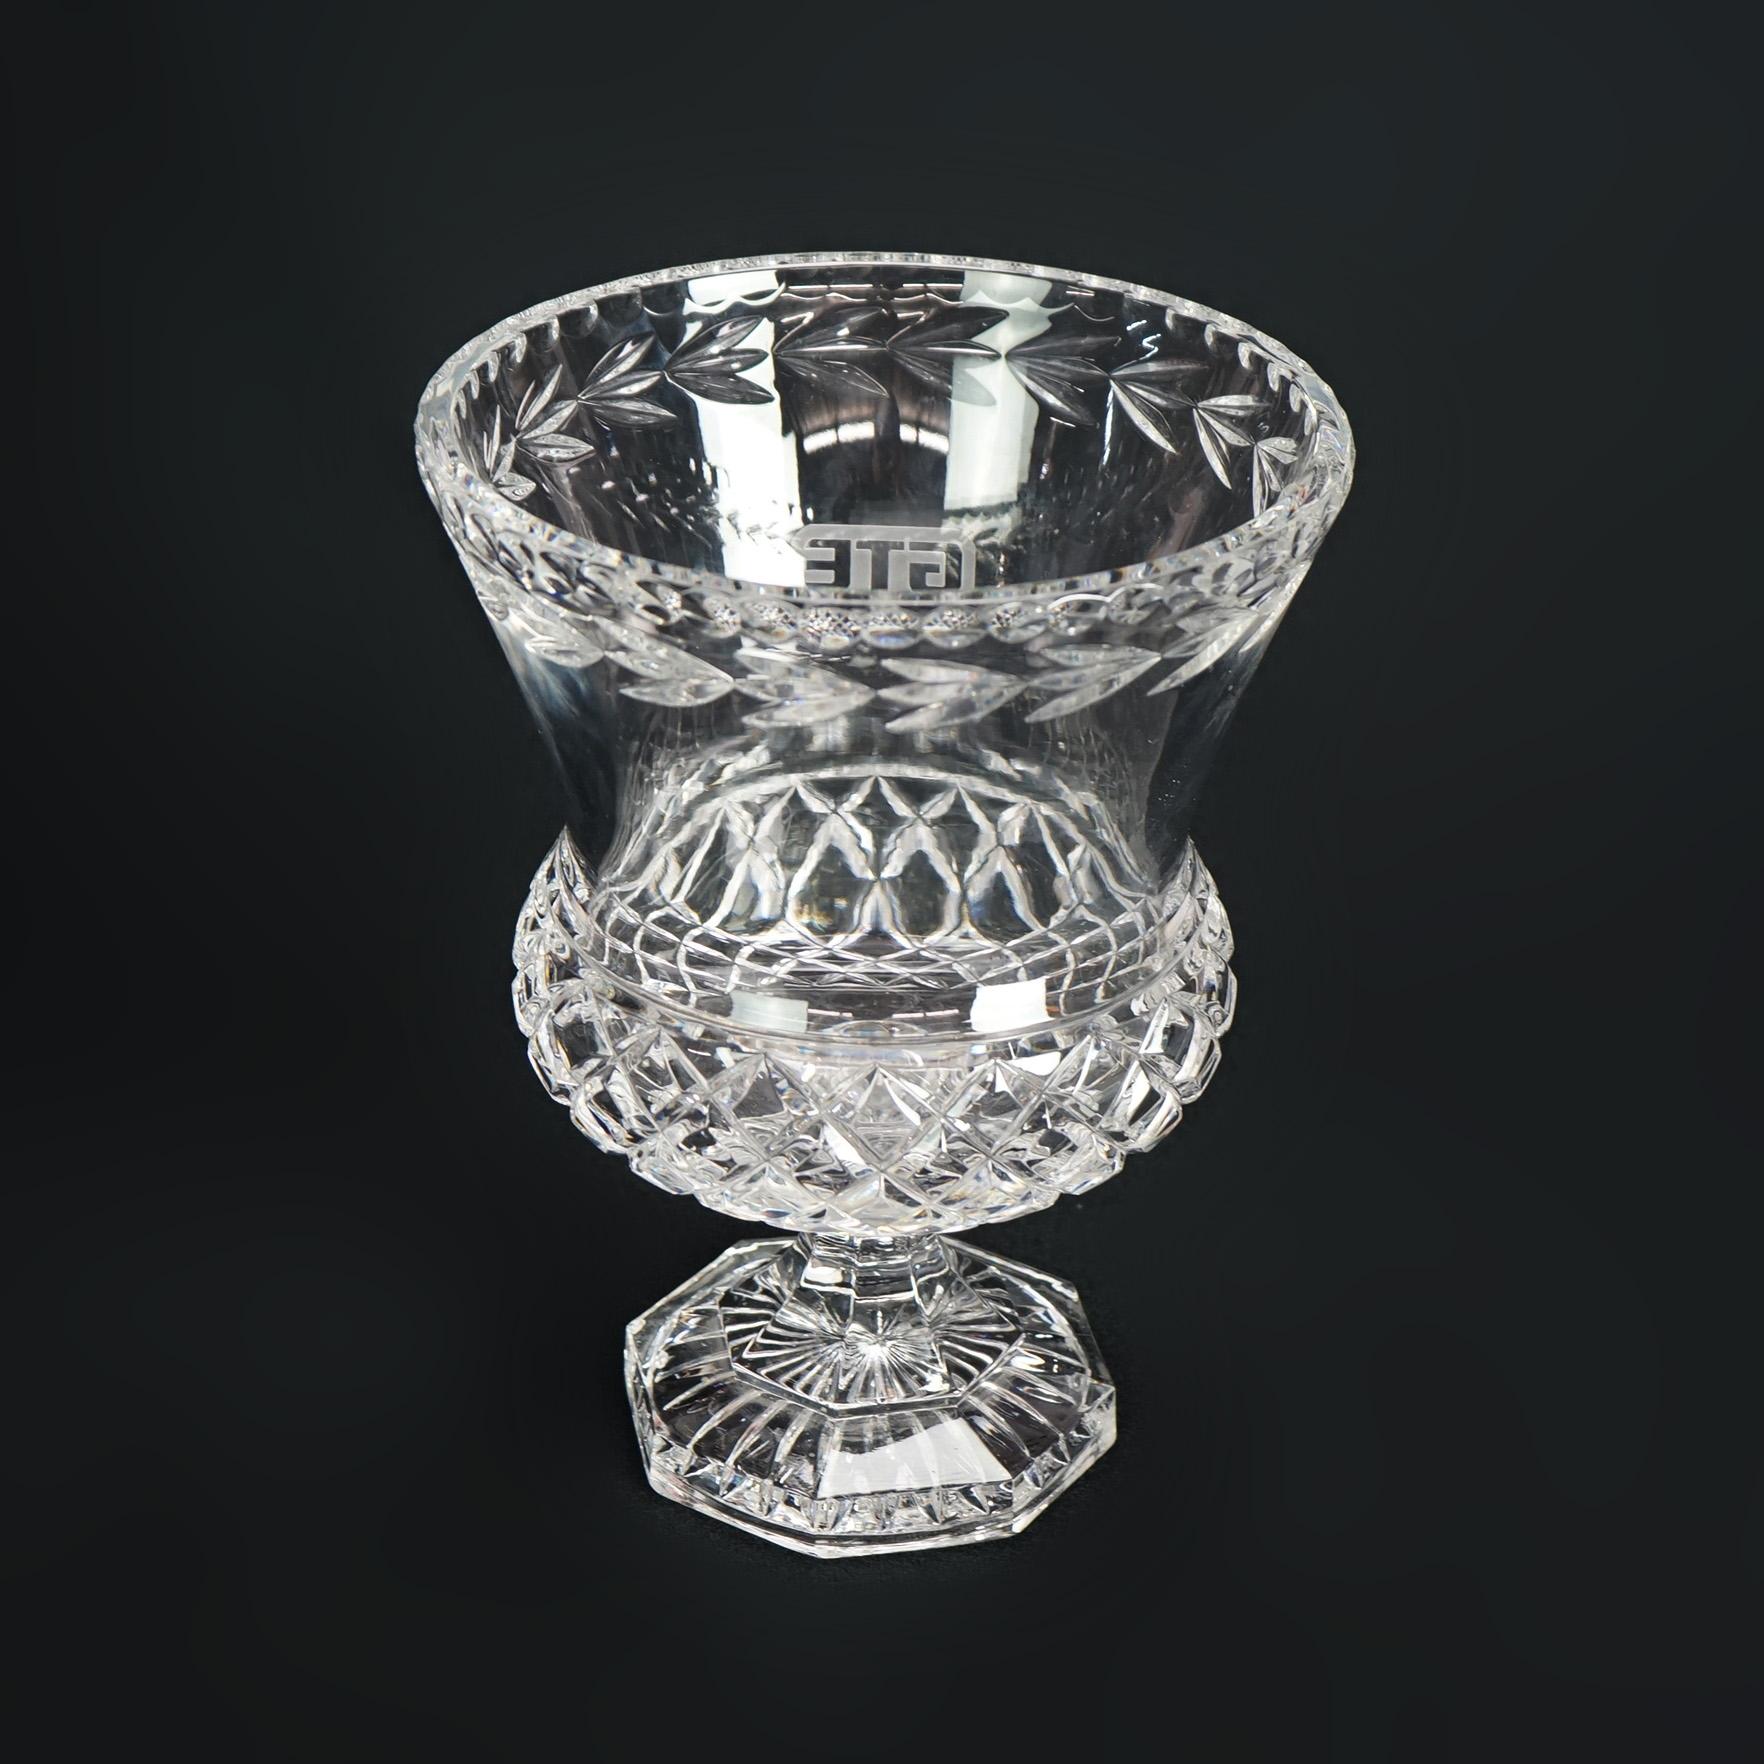 Steuben School Engraved Crystal GTE Trophy Award Cup Vase C1950 For Sale 2